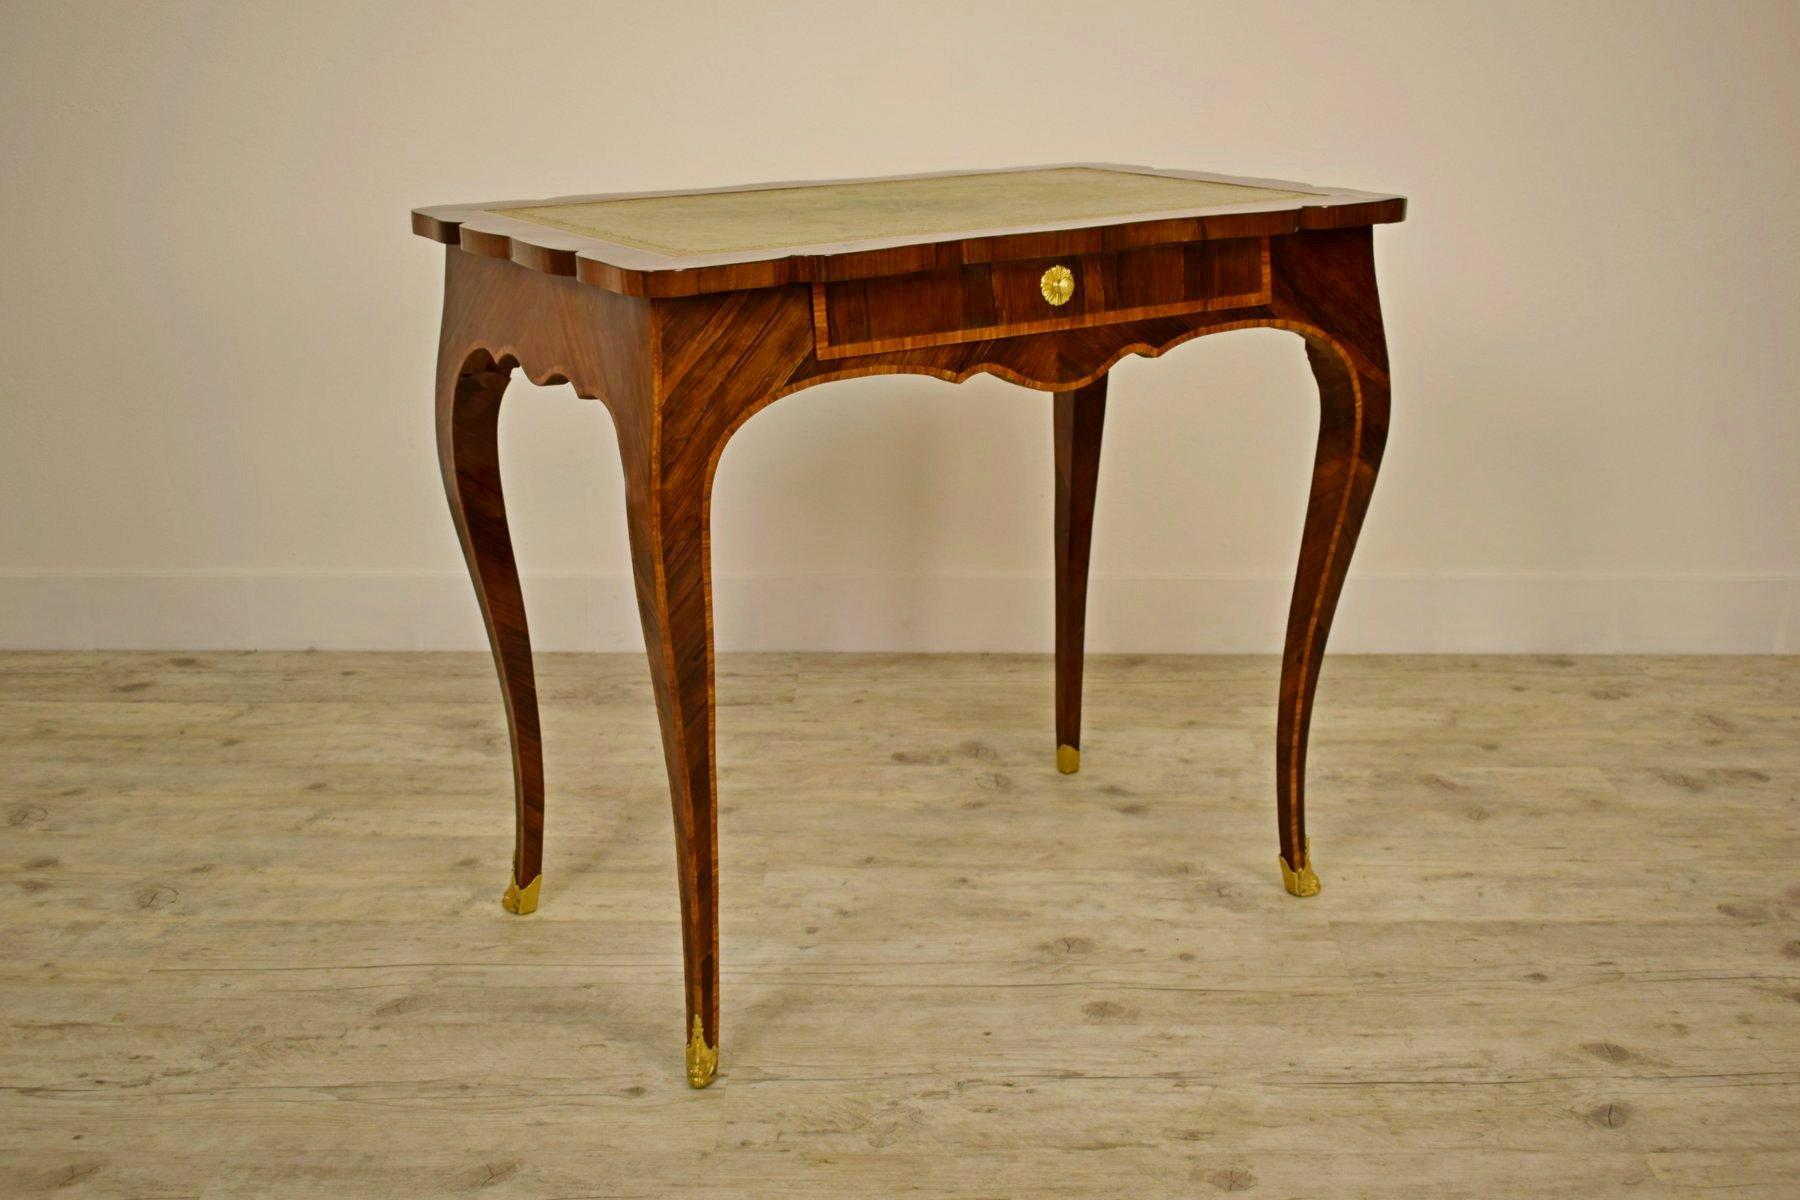 Der elegante antike norditalienische (Genua) Schreibtisch aus der Louis XV-Zeit, auch bureau plat genannt, ist aus furnierten und eingelegten Hölzern gefertigt. Sie hat eine schöne gewellte Linie mit schlanken, aber festen Beinen. Der Schreibtisch